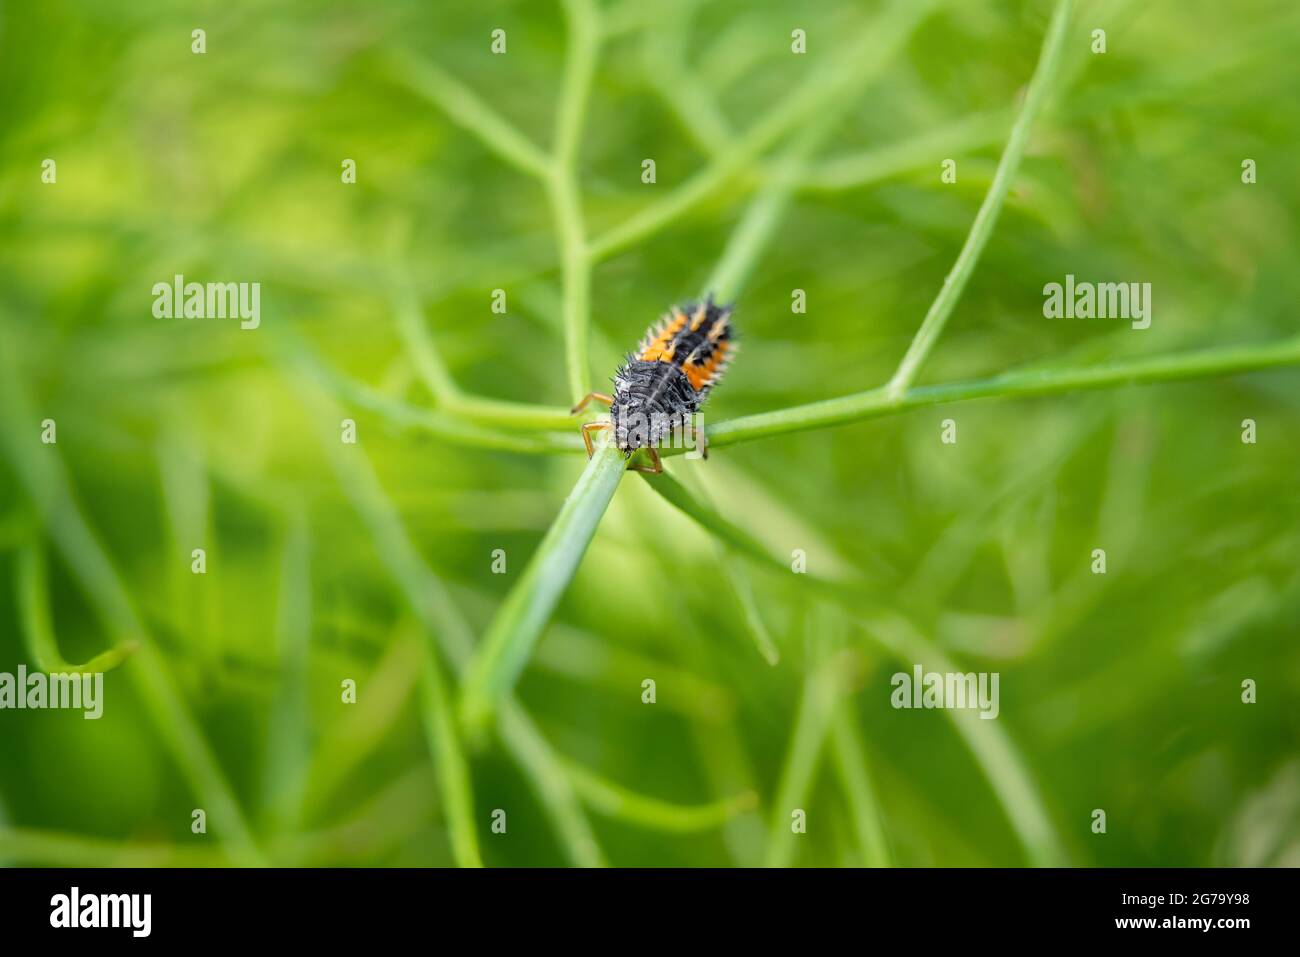 Marienkäfer-Larven oder Nymphen, die auf einer Fenchelpflanze kriechen. Schwarz orange gruselig aussehende Käfer vorteilhaft für jeden Garten, wie es verbraucht oder isst Blattläuse und andere Stockfoto